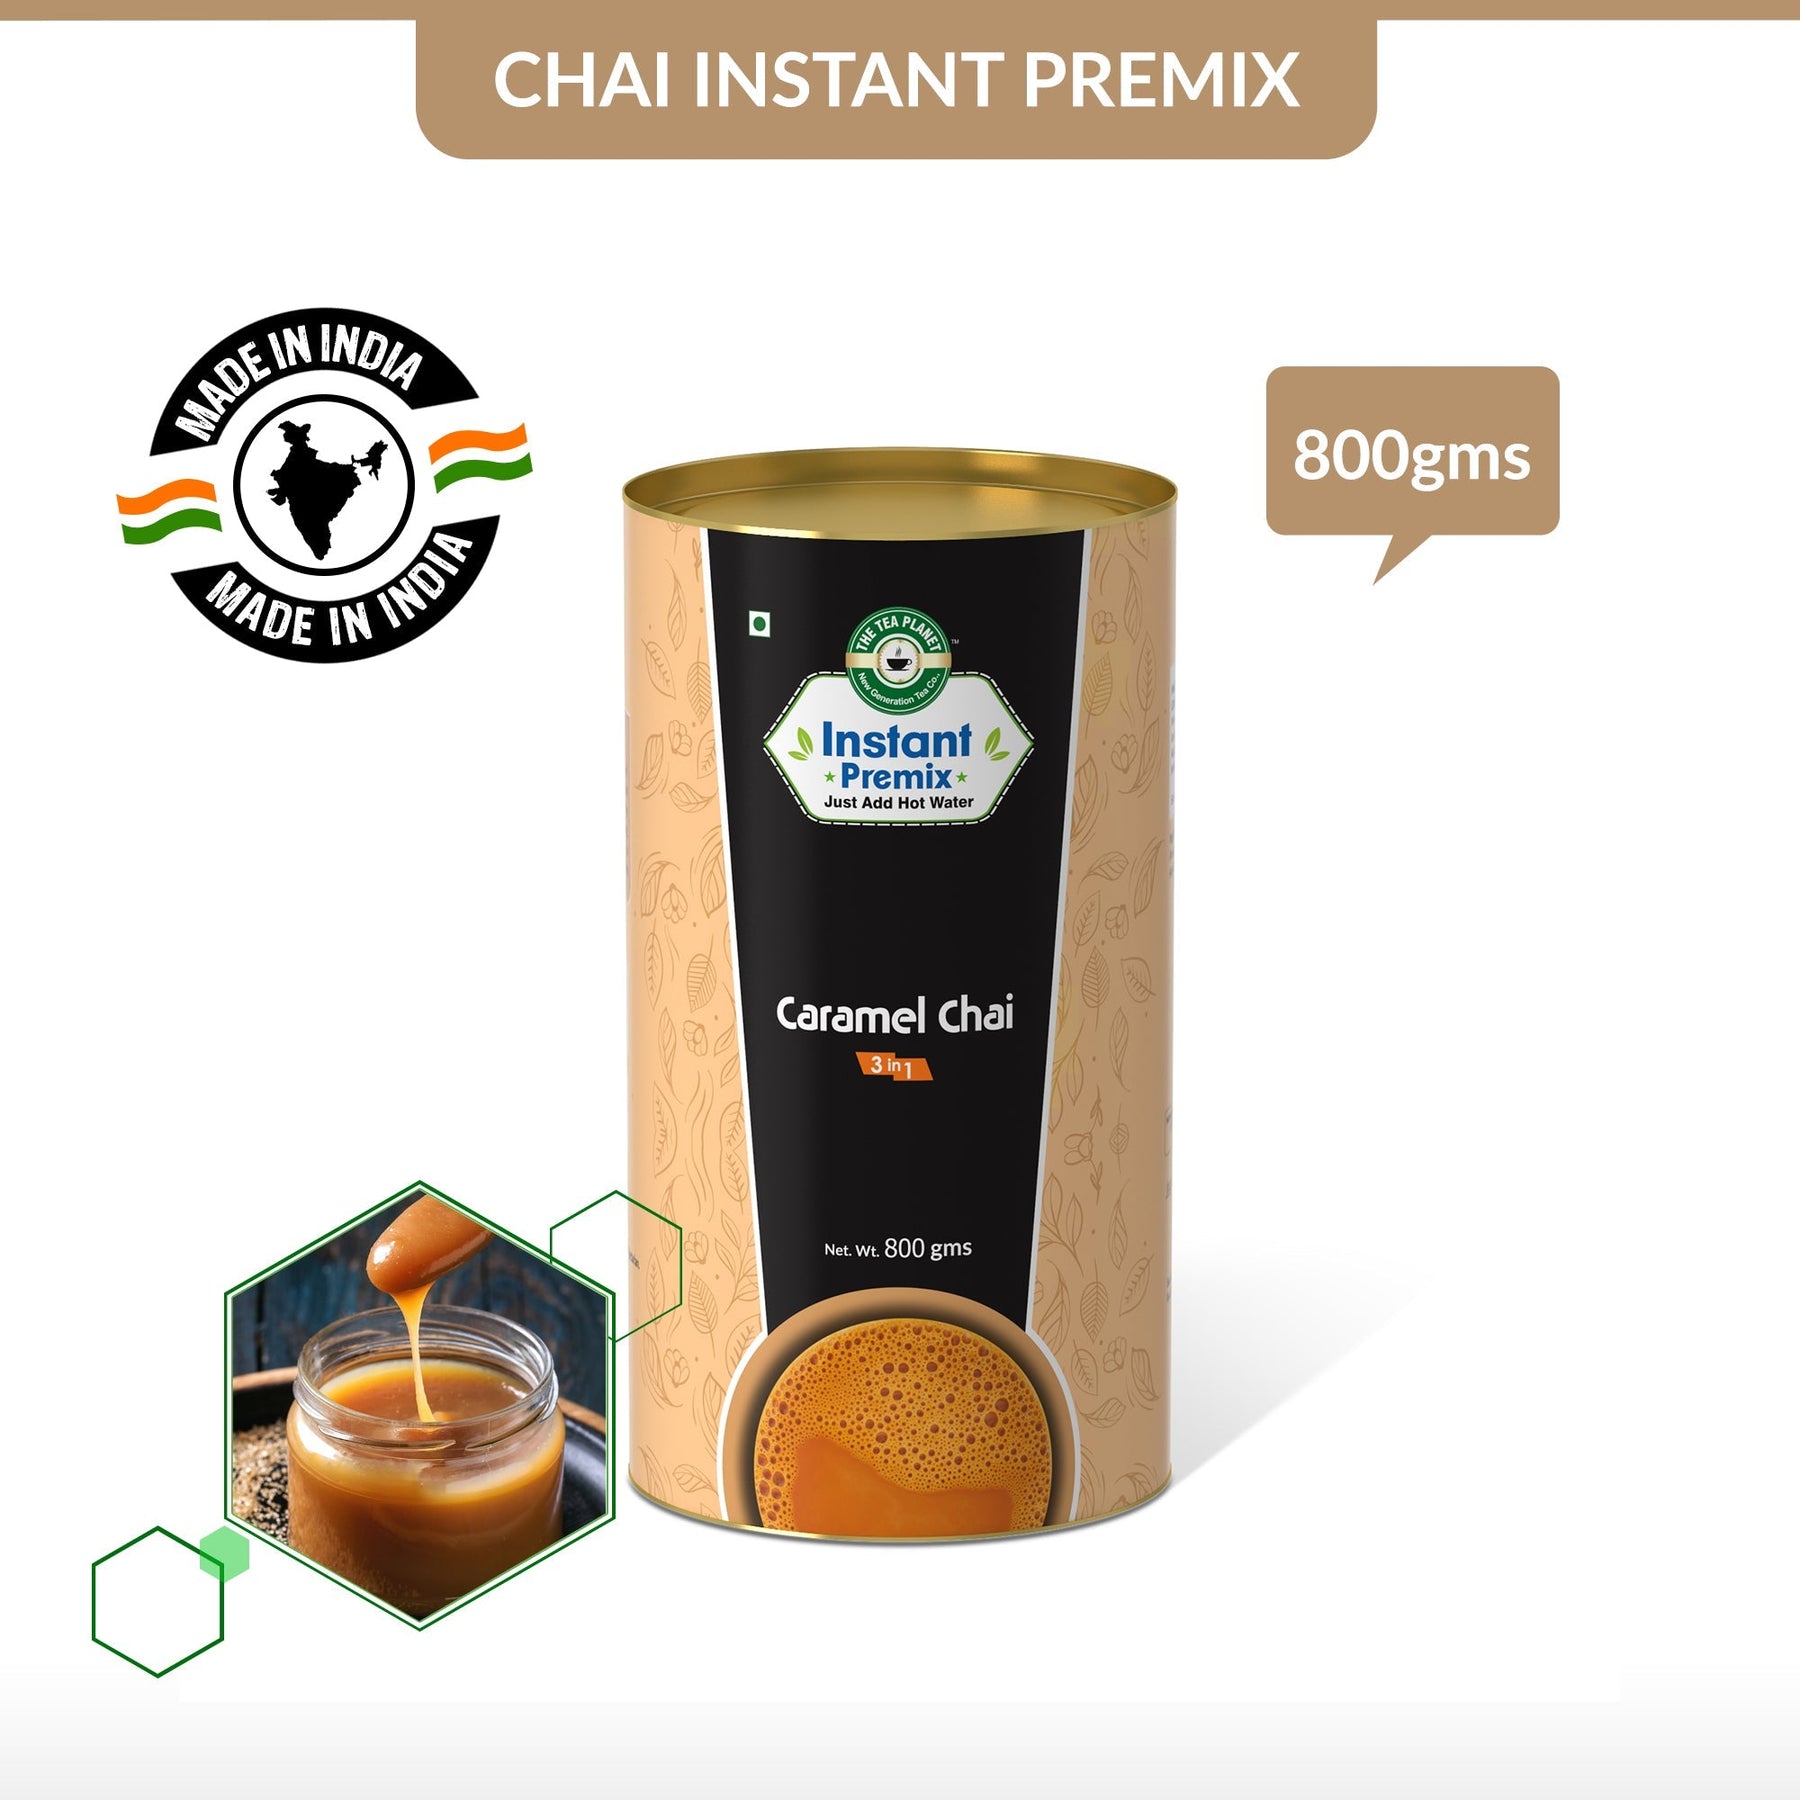 Caramel Chai Premix (3 in 1) - 800 gms